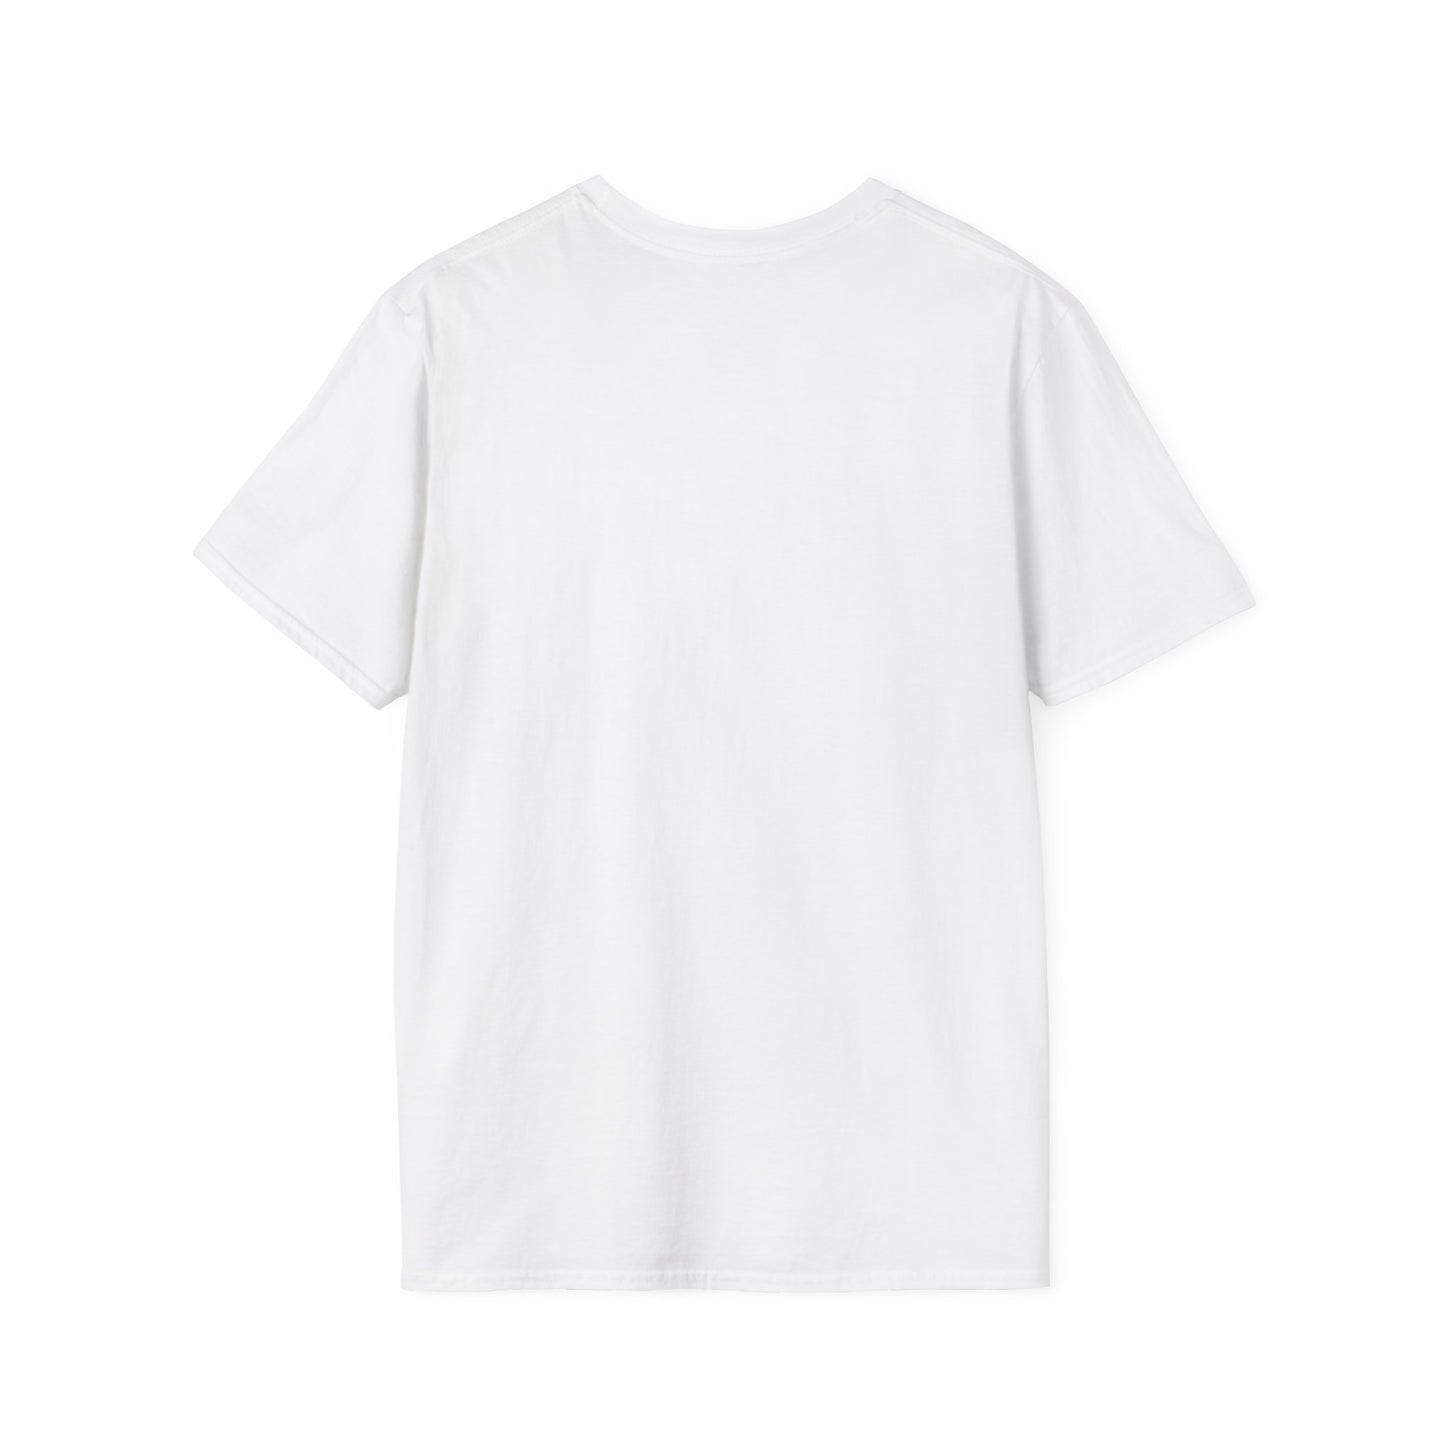 Beltane Unisex T-Shirt